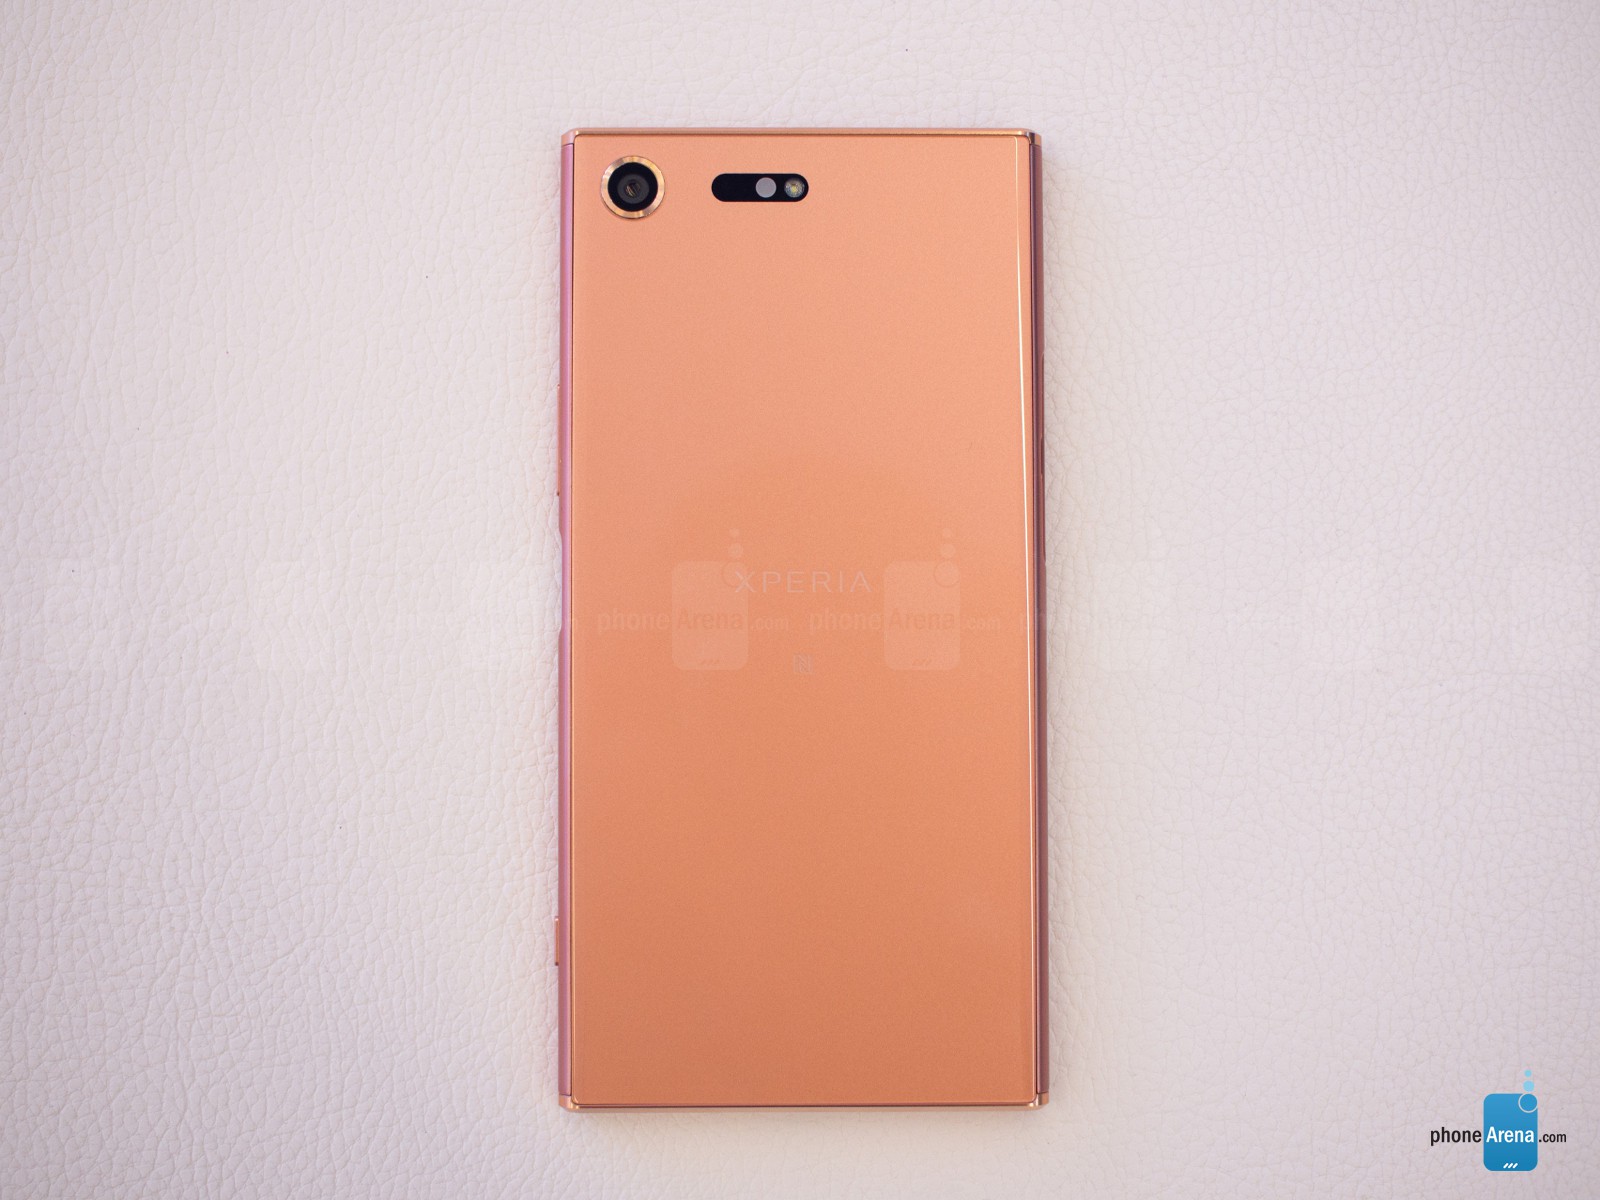 Trên tay siêu phẩm màn hình 4K - Xperia XZ Premium màu Bronze Pink